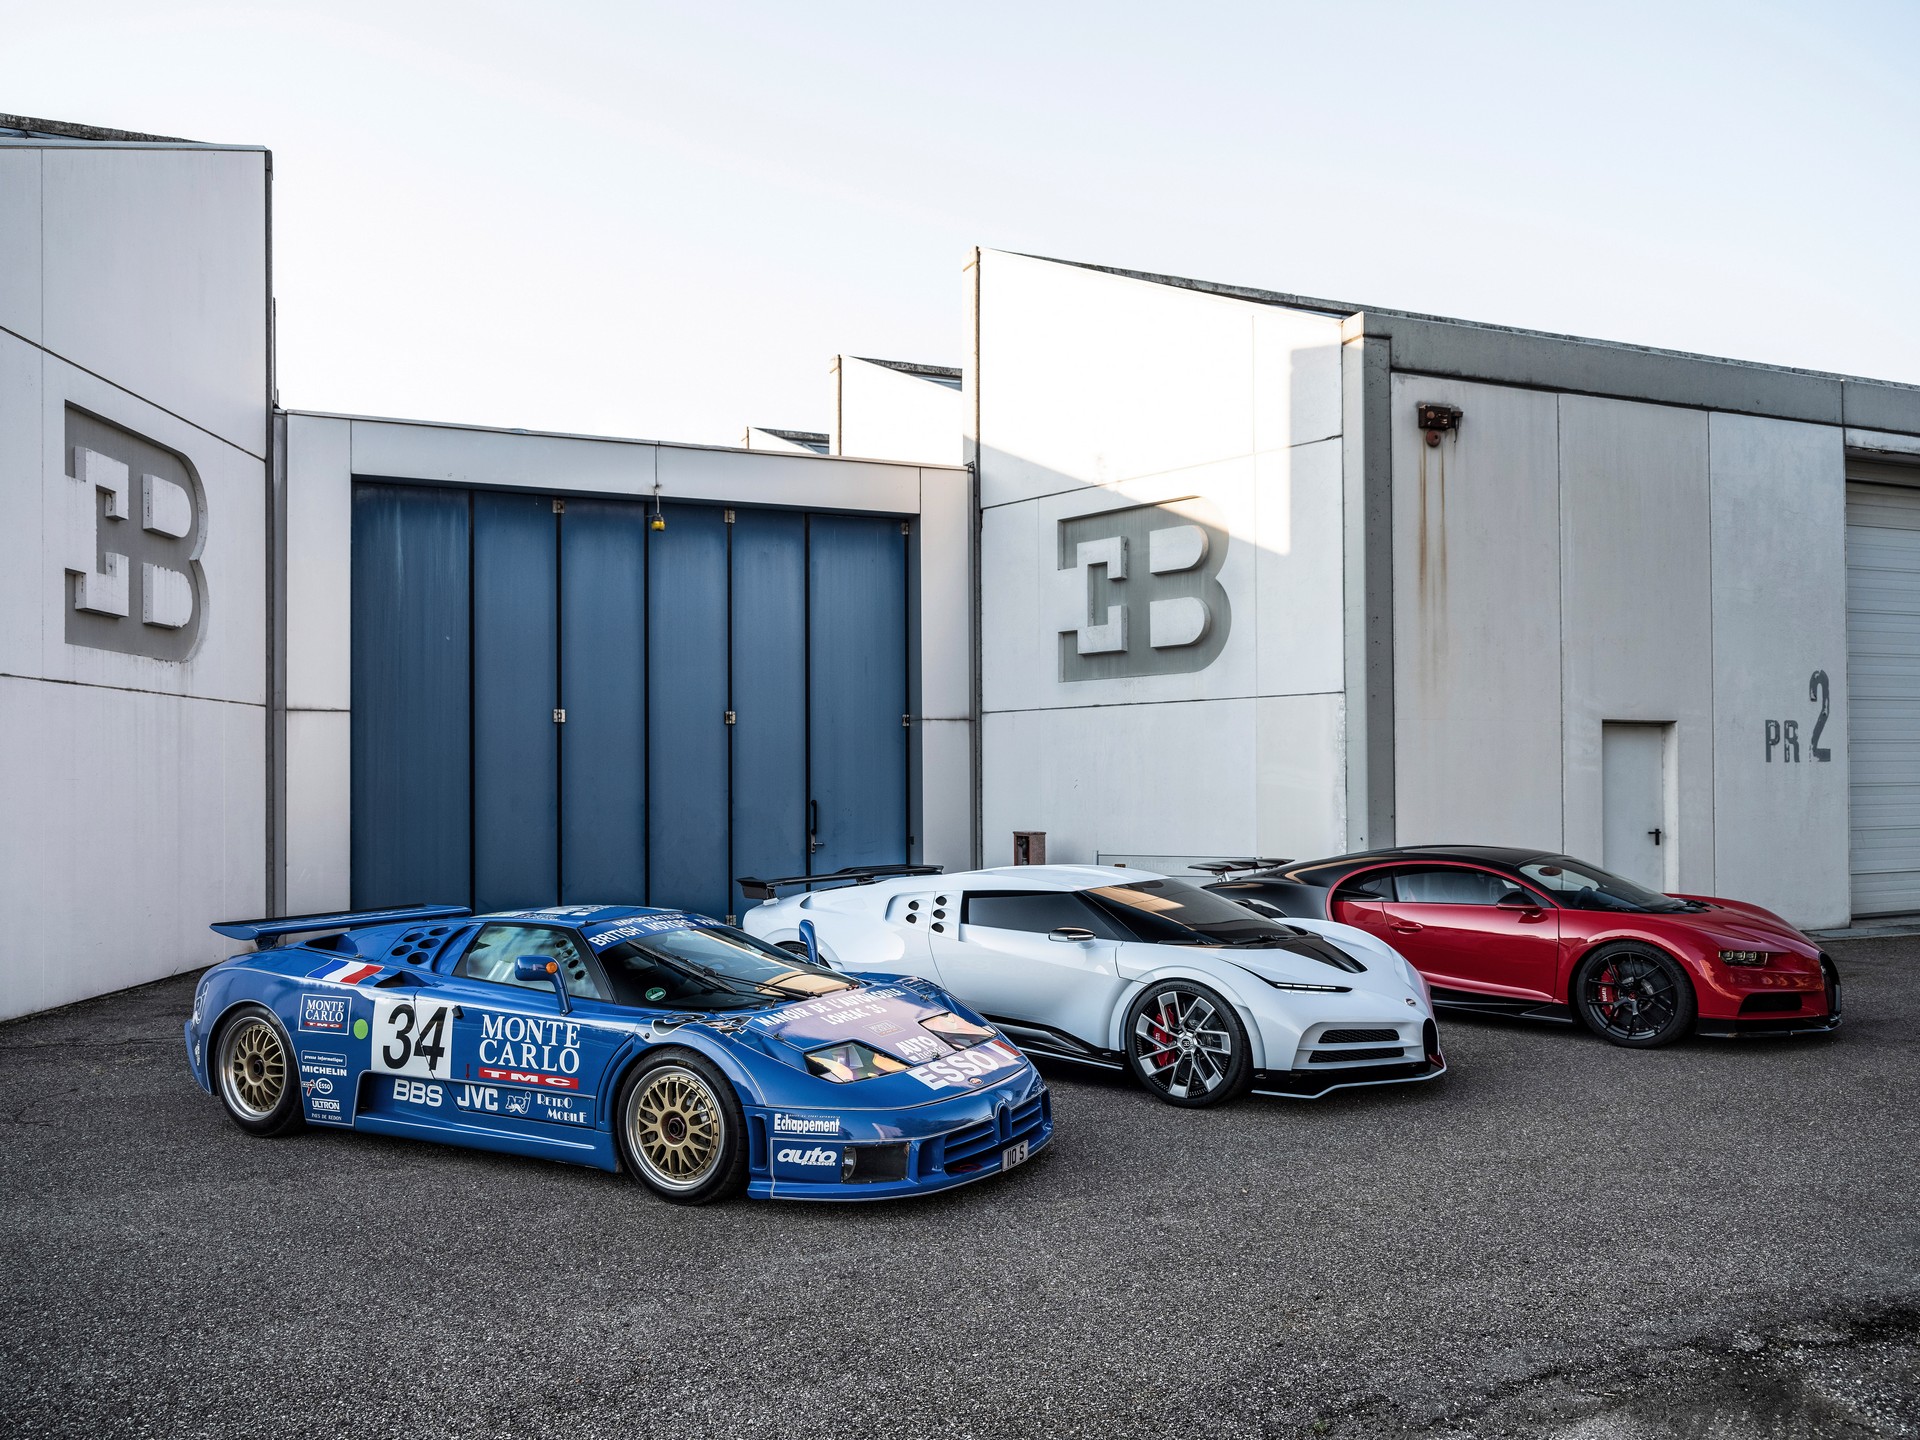 Choáng ngợp trước dàn Bugatti với toàn siêu phẩm quý hiếm trị giá hàng trăm triệu USD tụ họp - Ảnh 3.